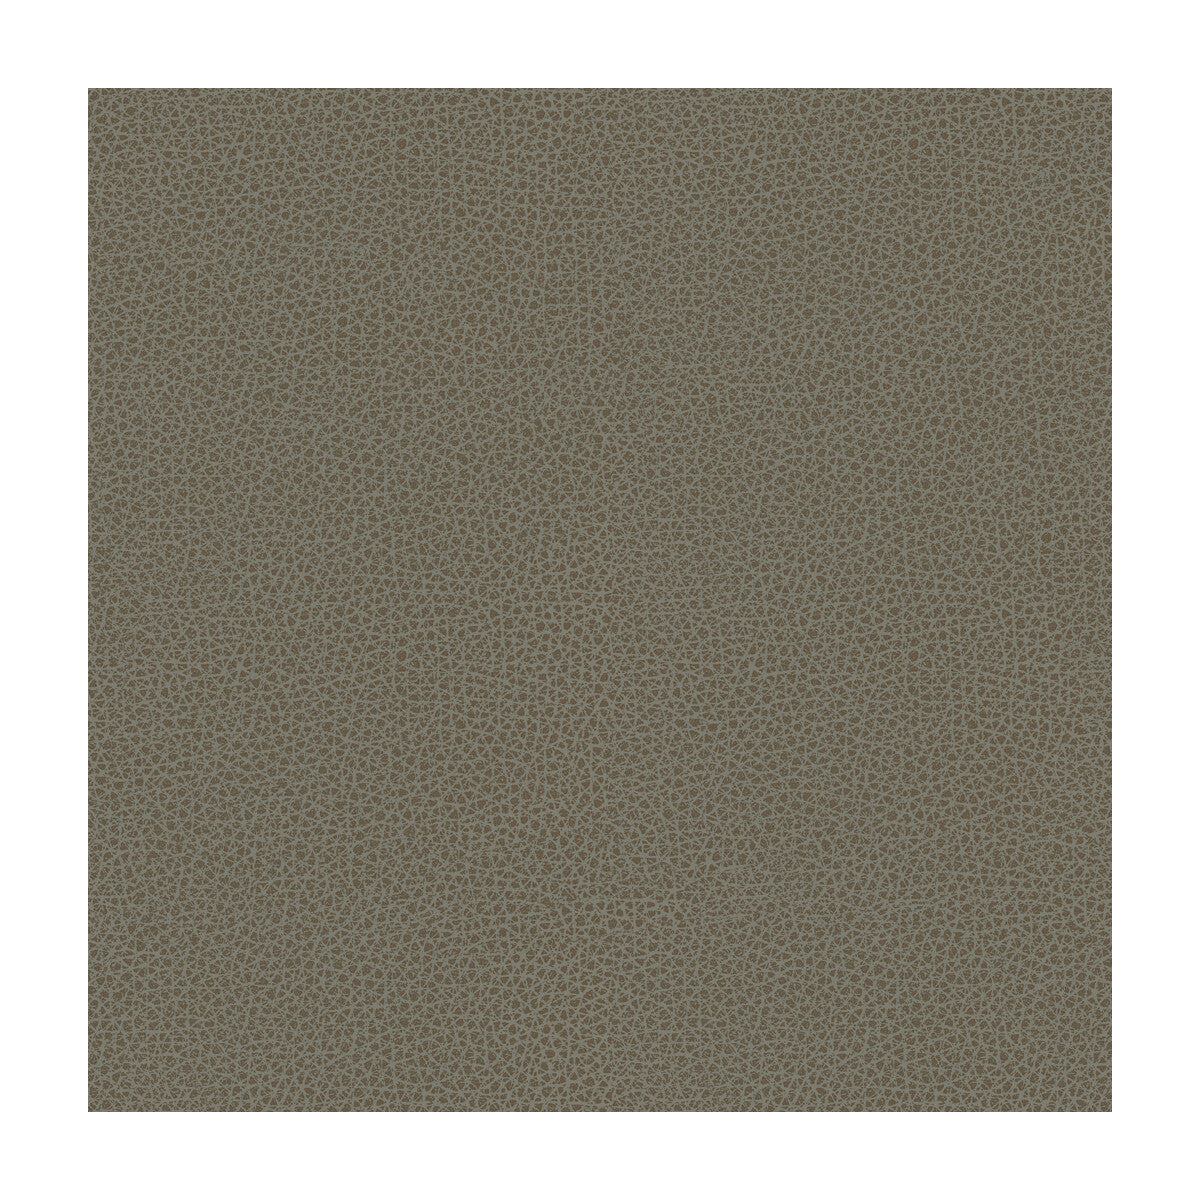 Kravet Design fabric in rigel-11 color - pattern RIGEL.11.0 - by Kravet Design